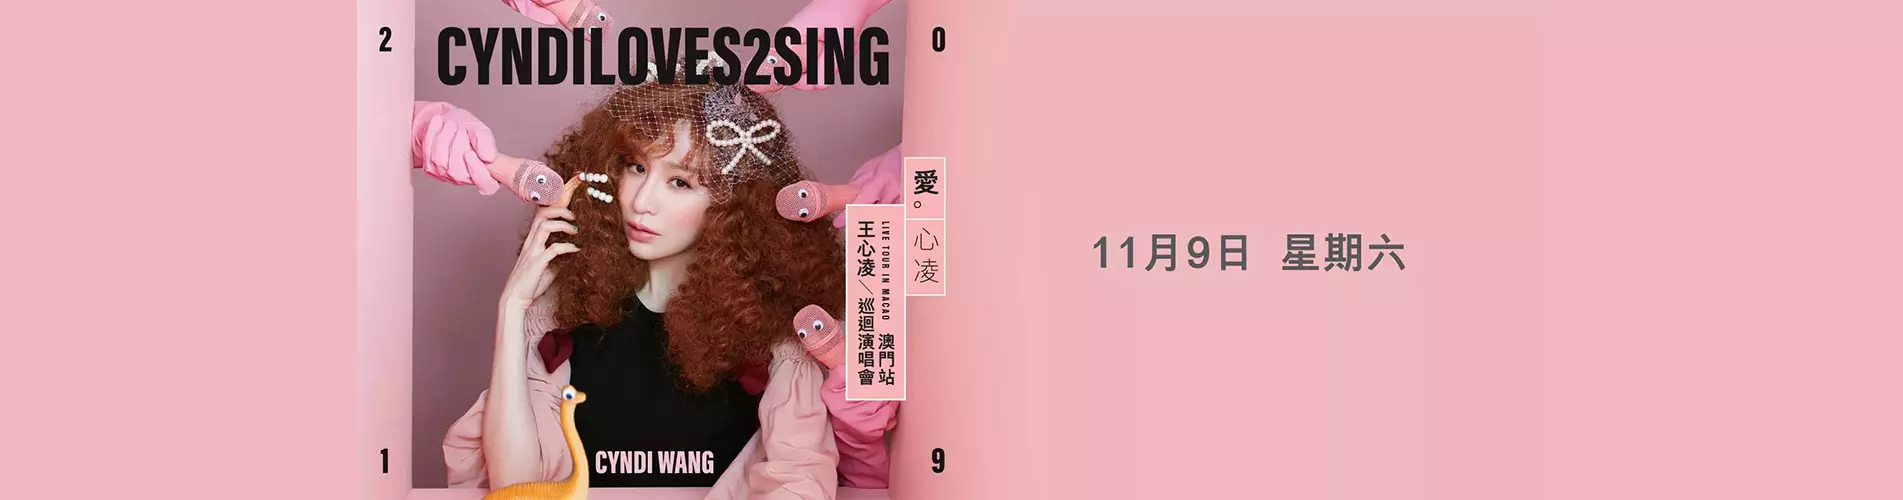 王心凌2019 CYNDILOVES2SING愛 º 心凌巡迴演唱會 - 澳門站